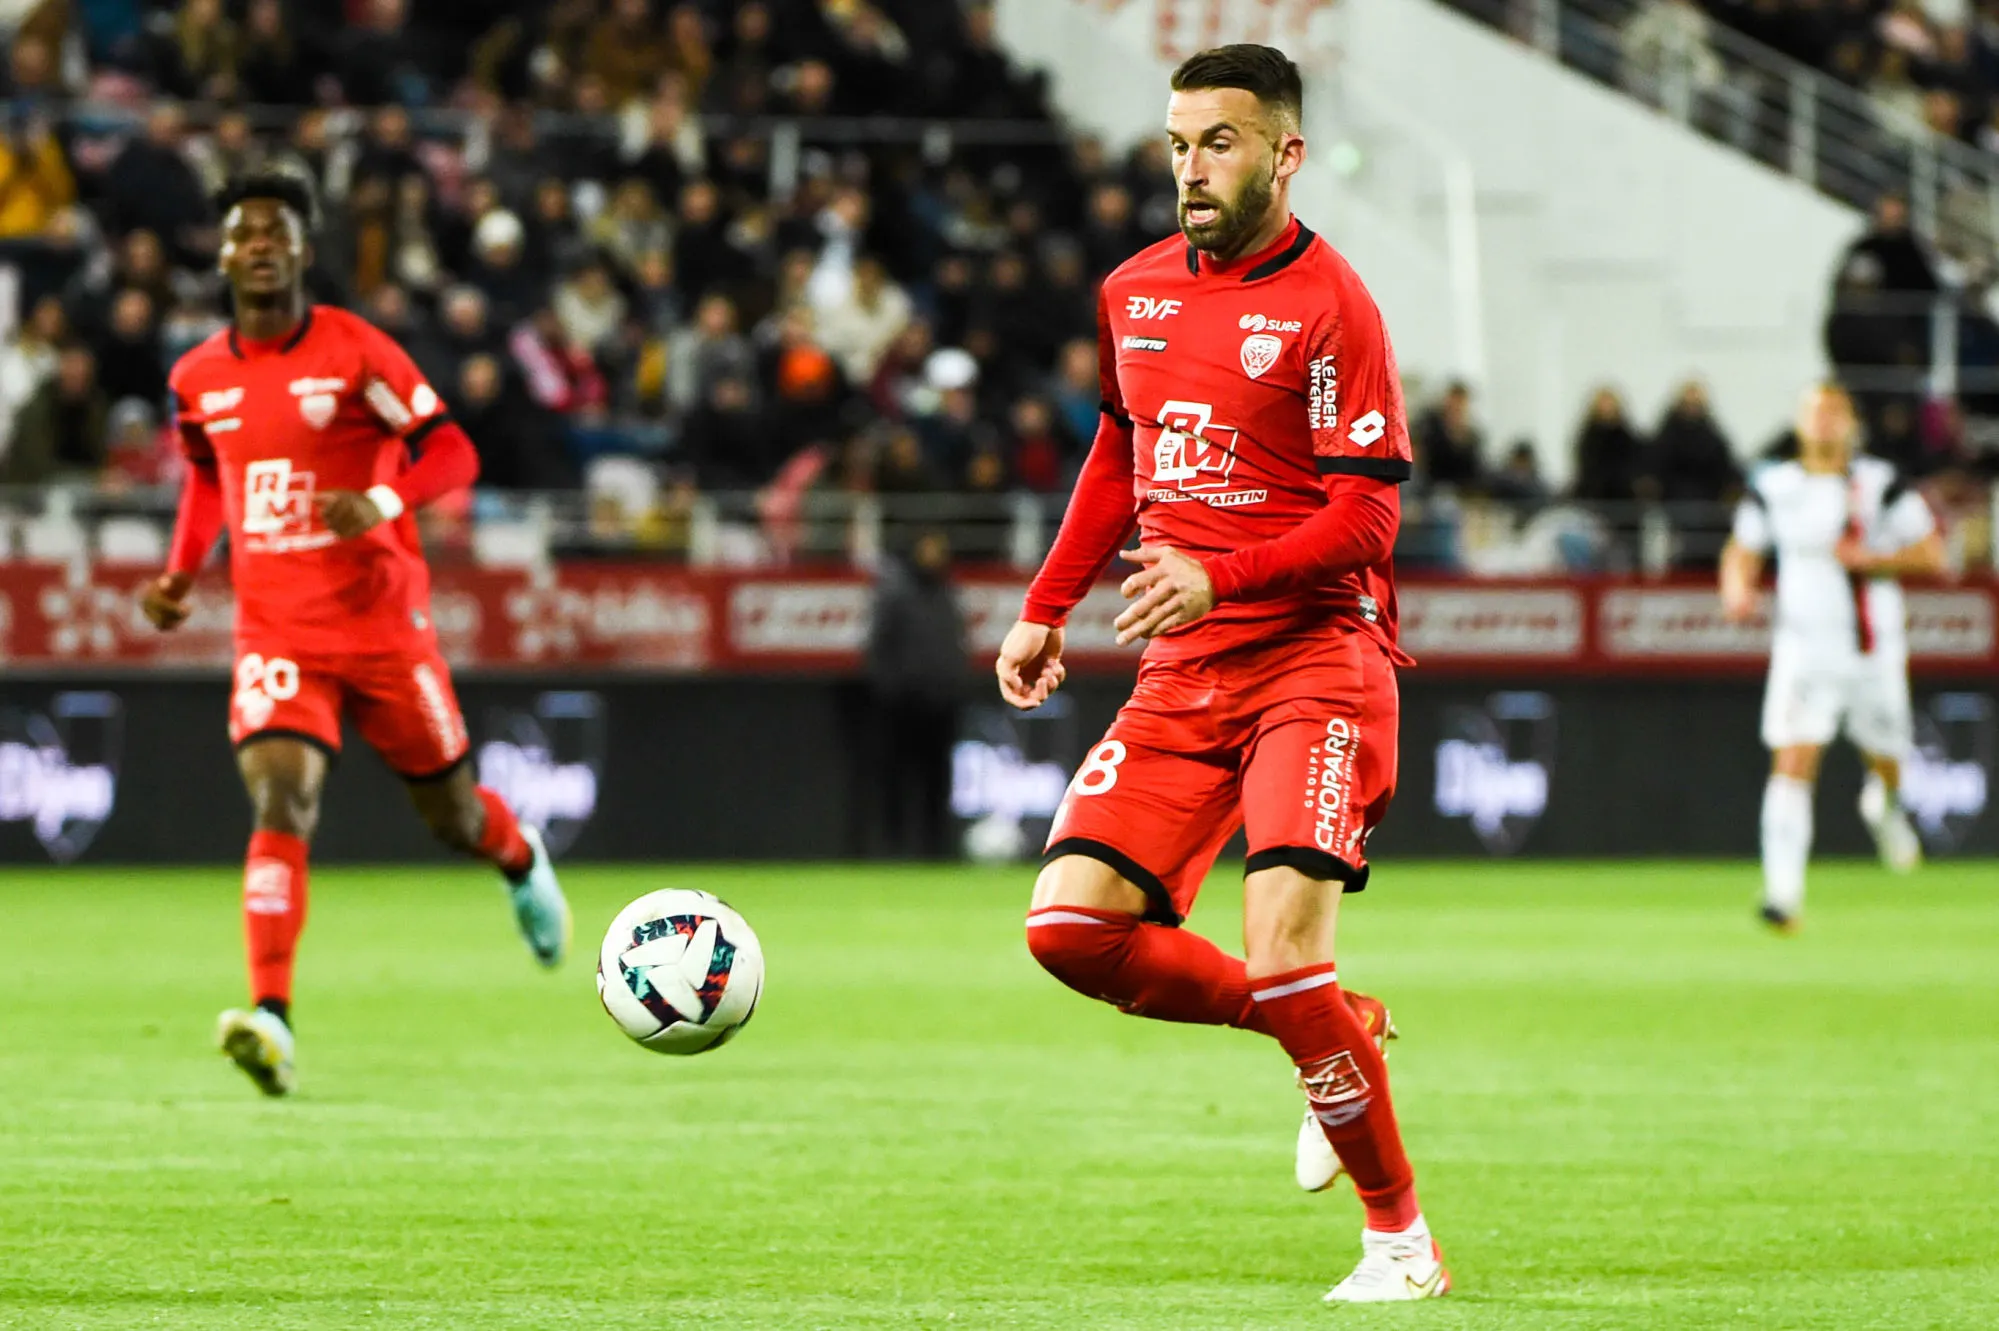 Pronostic Dijon Laval : analyse, cotes et prono du match de Ligue 2